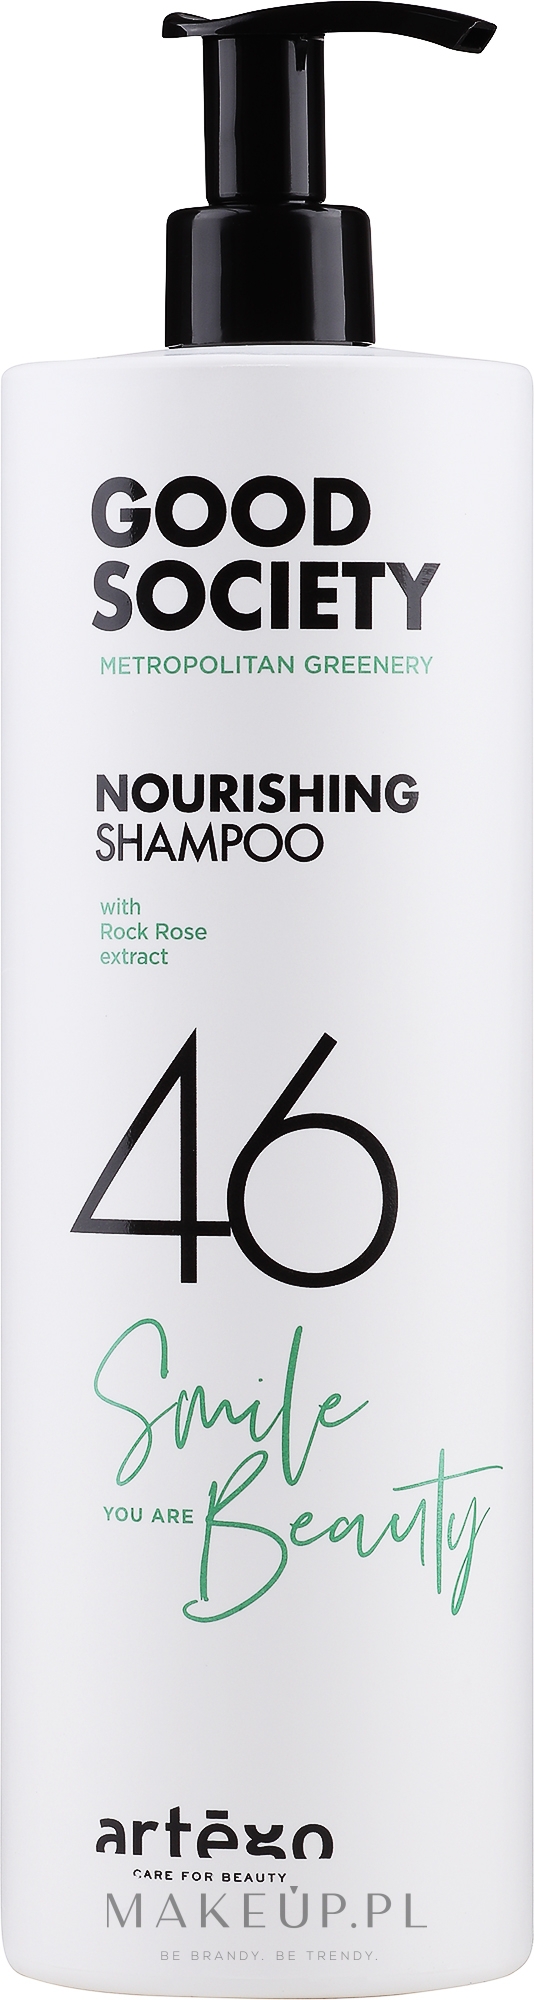 Keratynowy szampon do włosów - Artego Good Society Nourishing 46 Shampoo — Zdjęcie 1000 ml